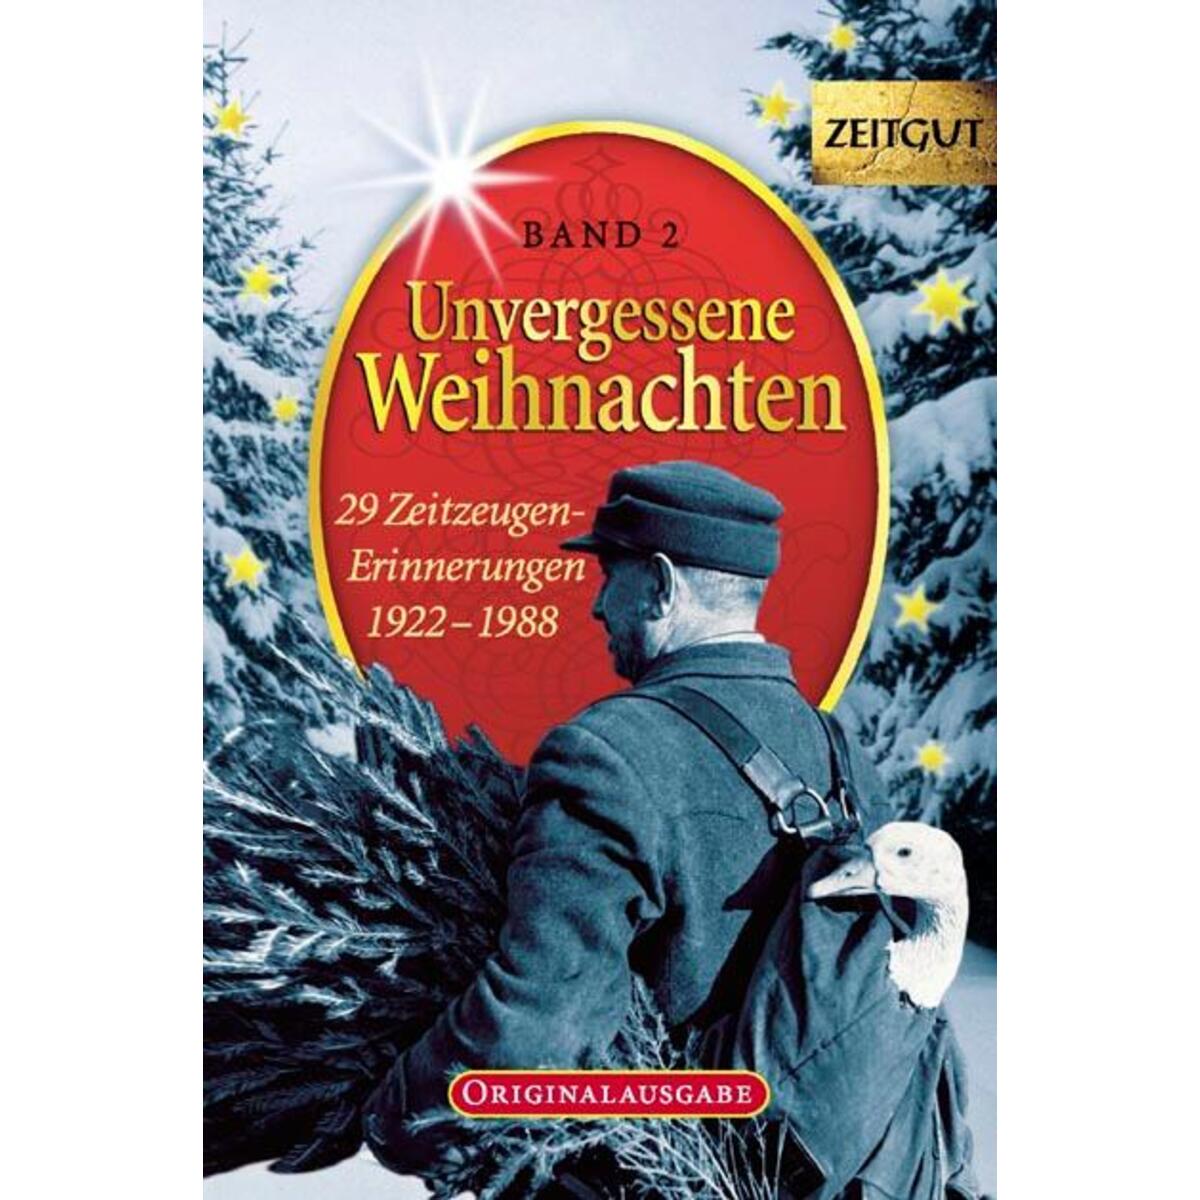 Unvergessene Weihnachten 2 von Zeitgut Verlag GmbH